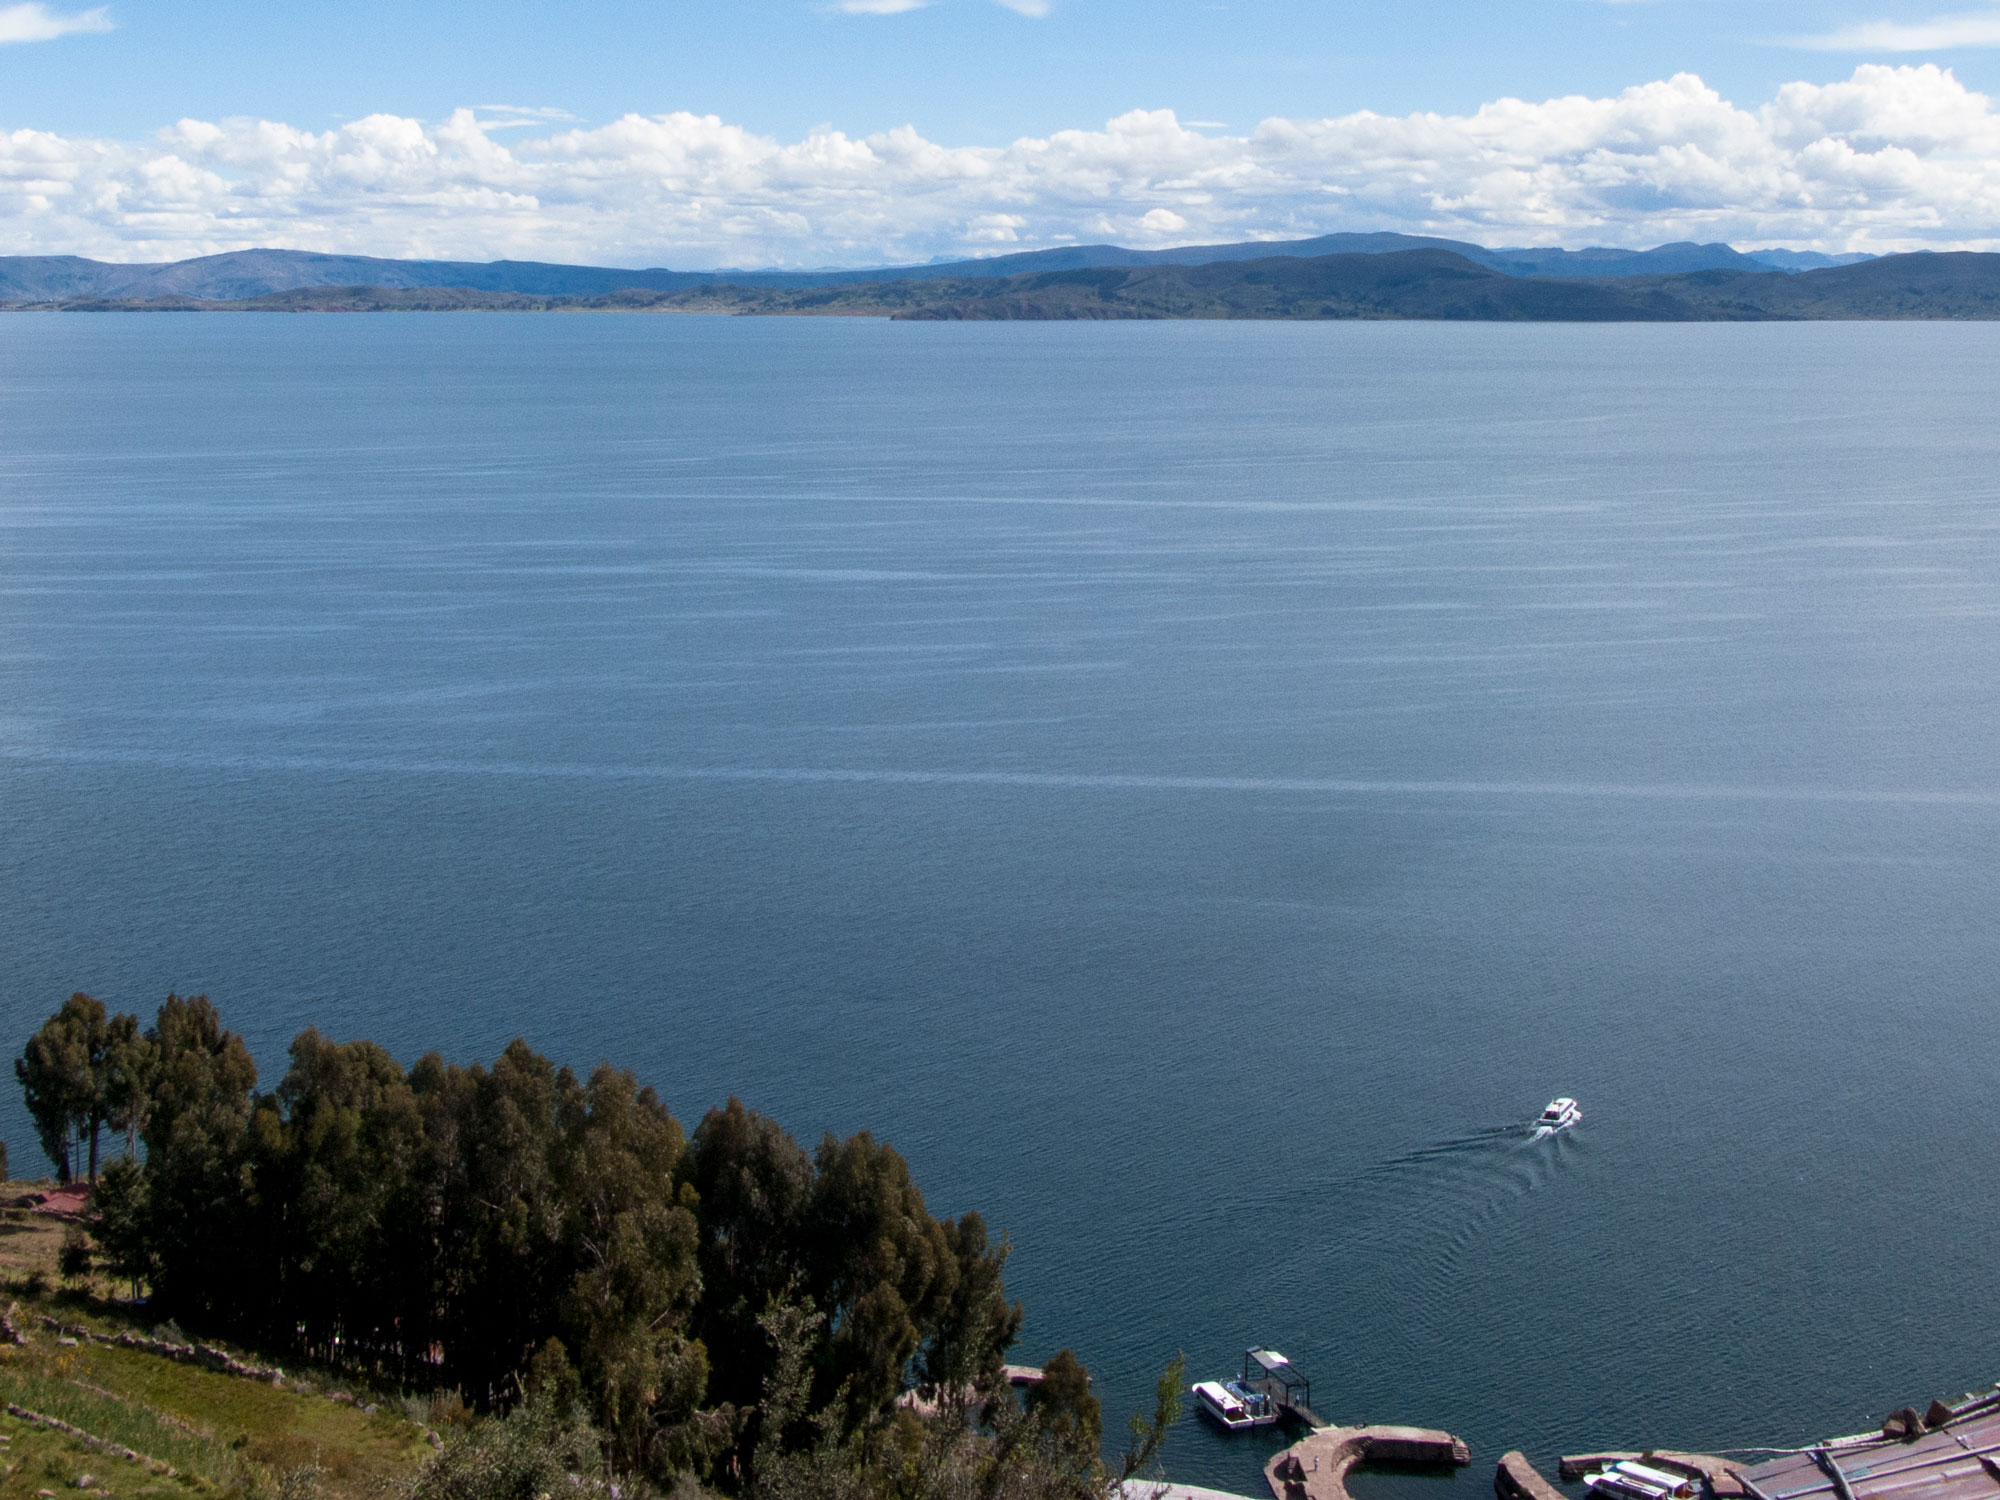 Peru Puno Titicaca ferry Taquile island top view